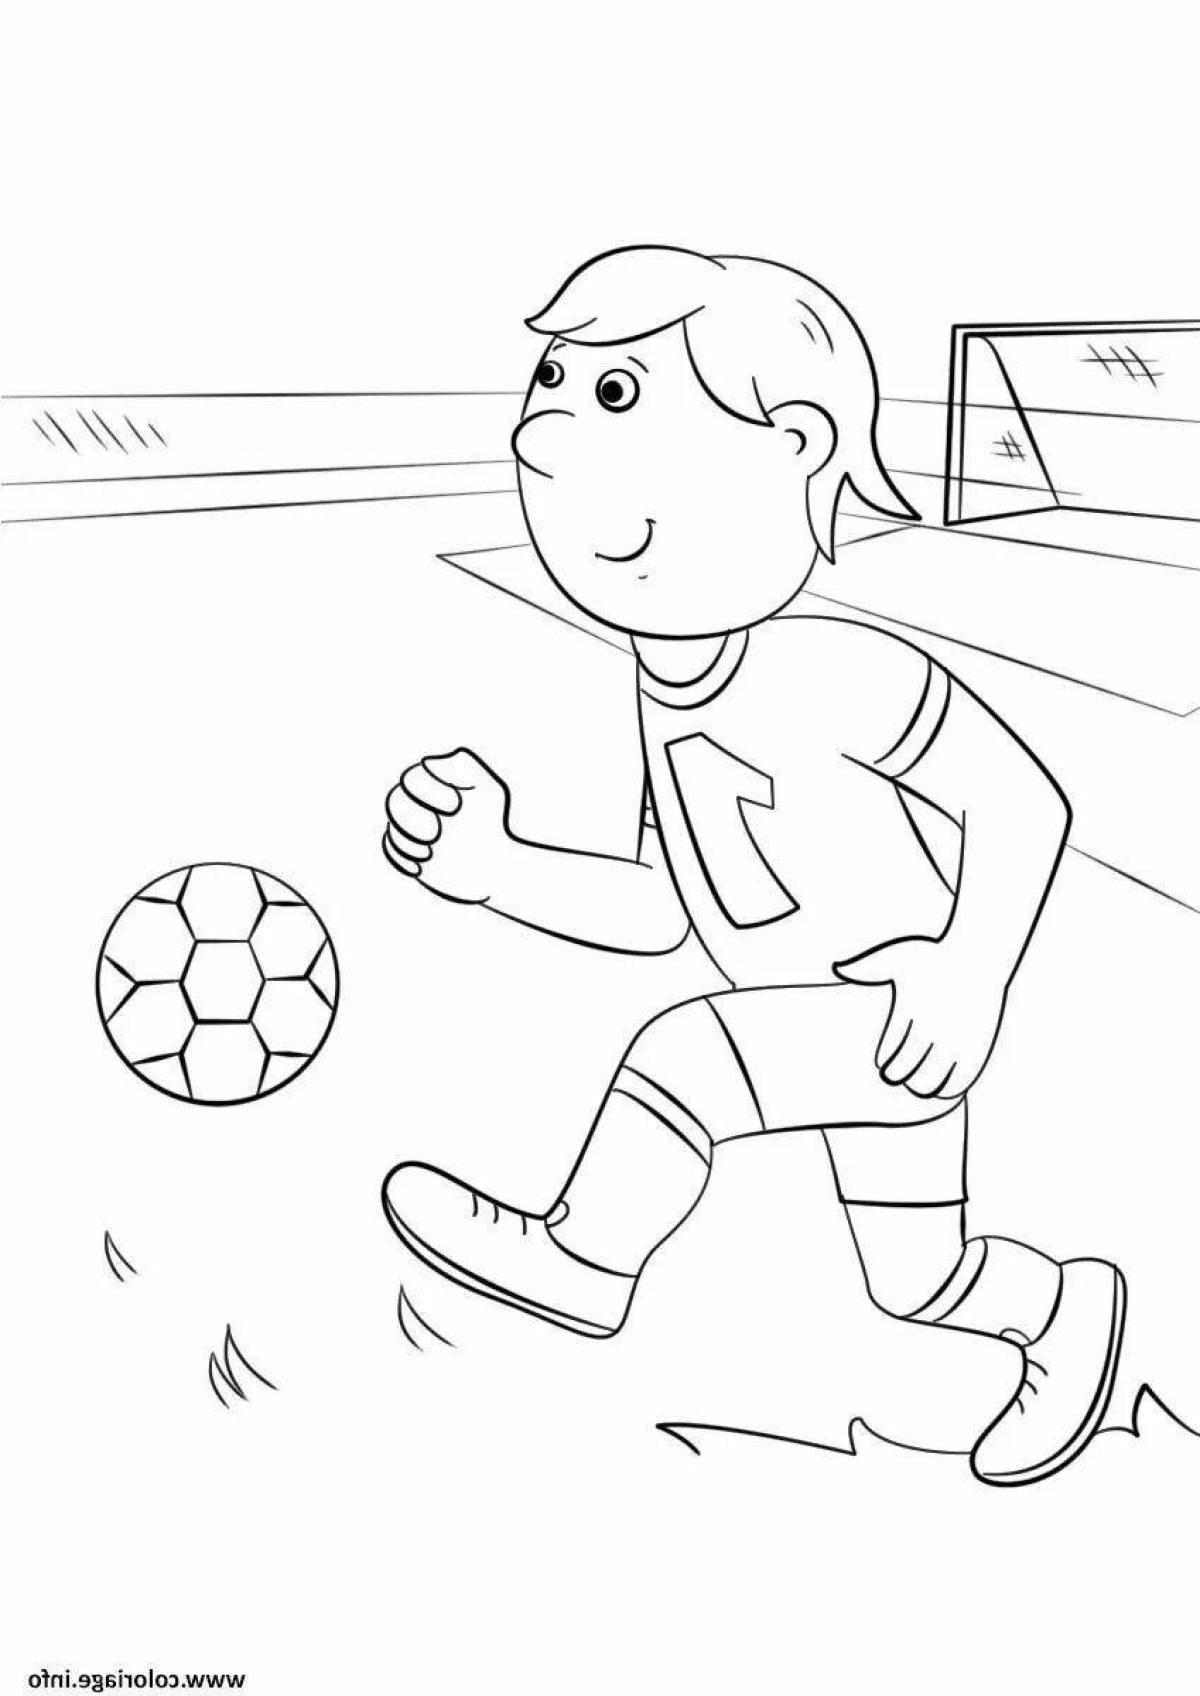 Нарисовать любые игры. Рисунок на тему футбол. Раскраска футбол. Футбол раскраска для детей. Детские рисунки на тему футбол.